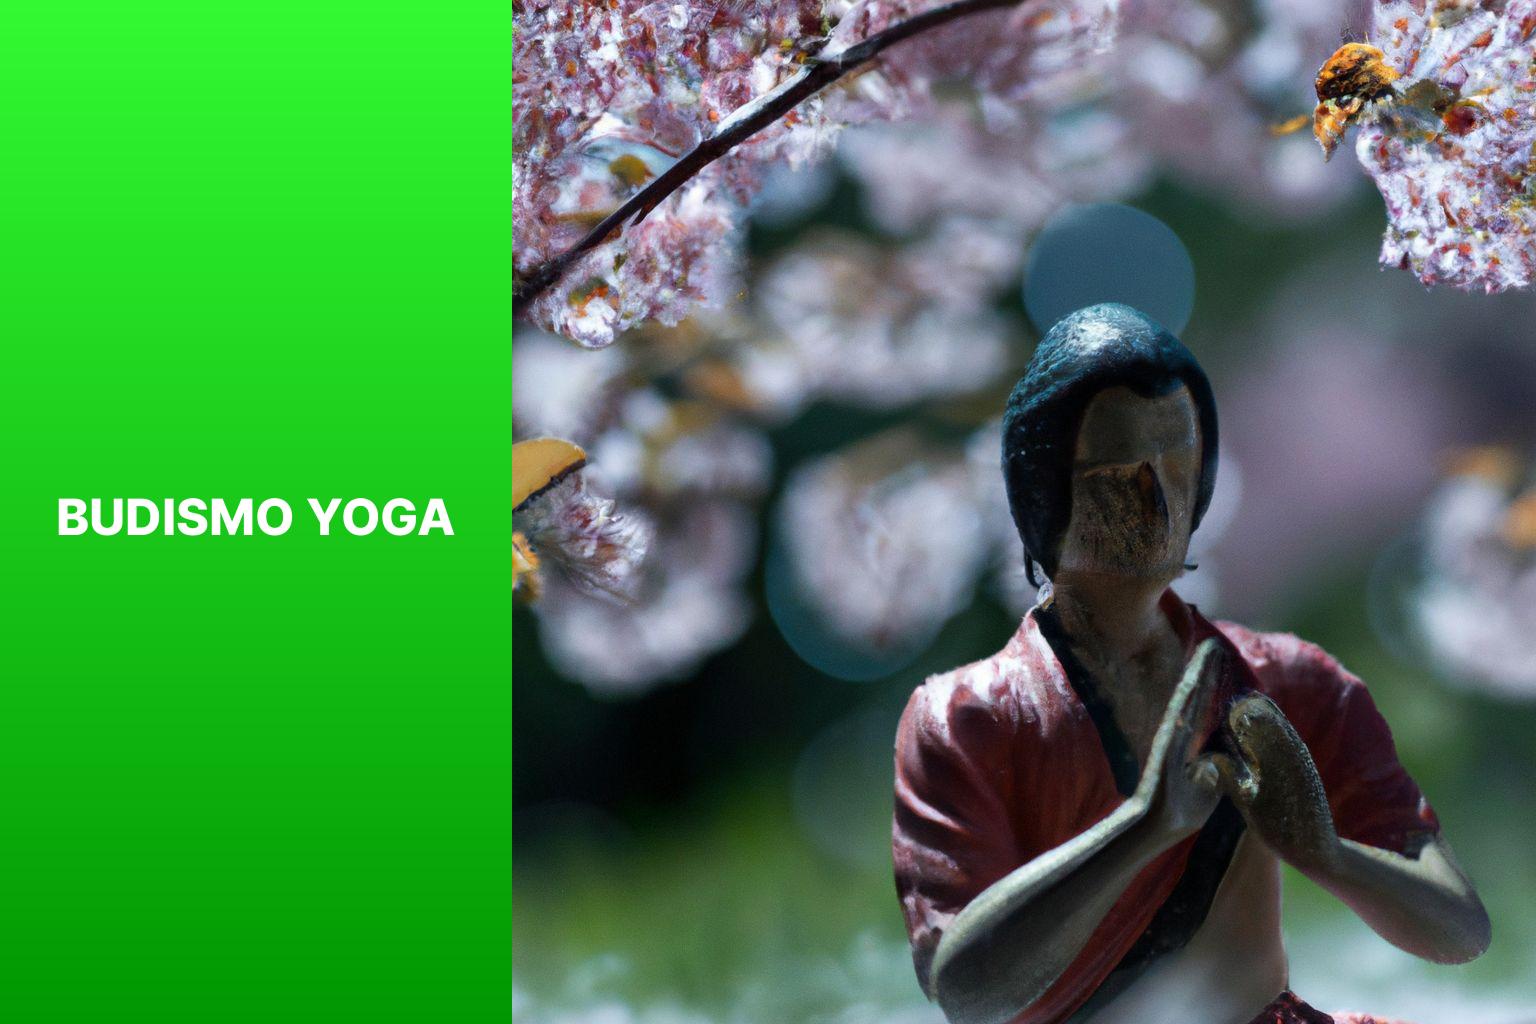 Budismo Yoga